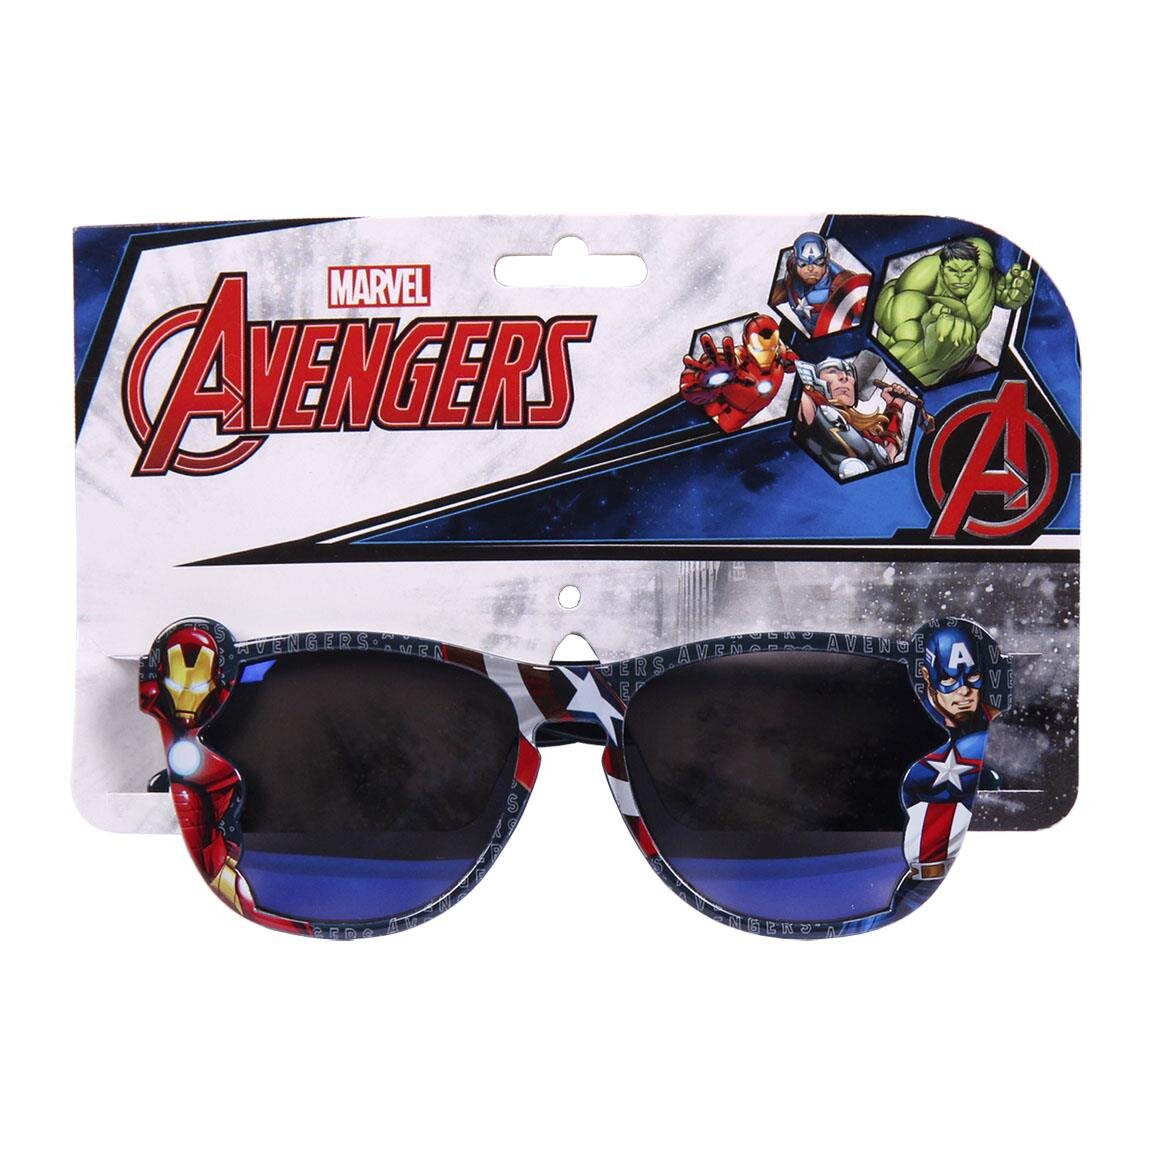 Avengers Marvel - Solglasögon till barn